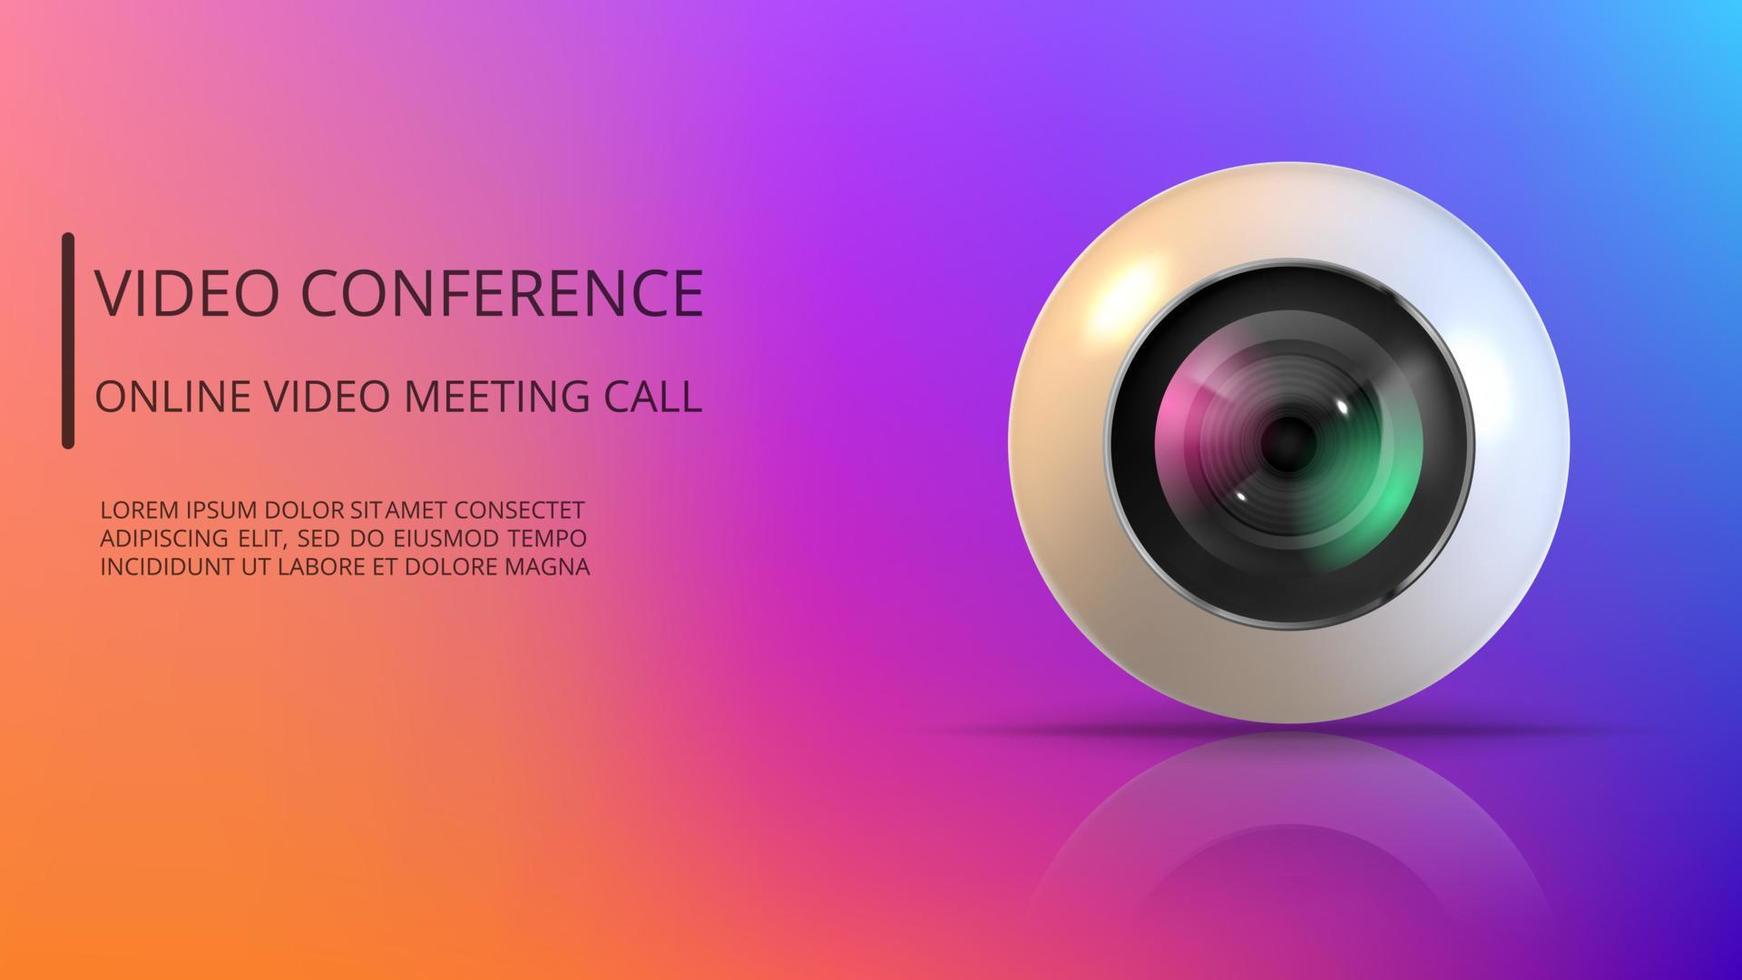 realistisch runden Webcam. Design zum Video Konferenz oder Video Plaudern vektor